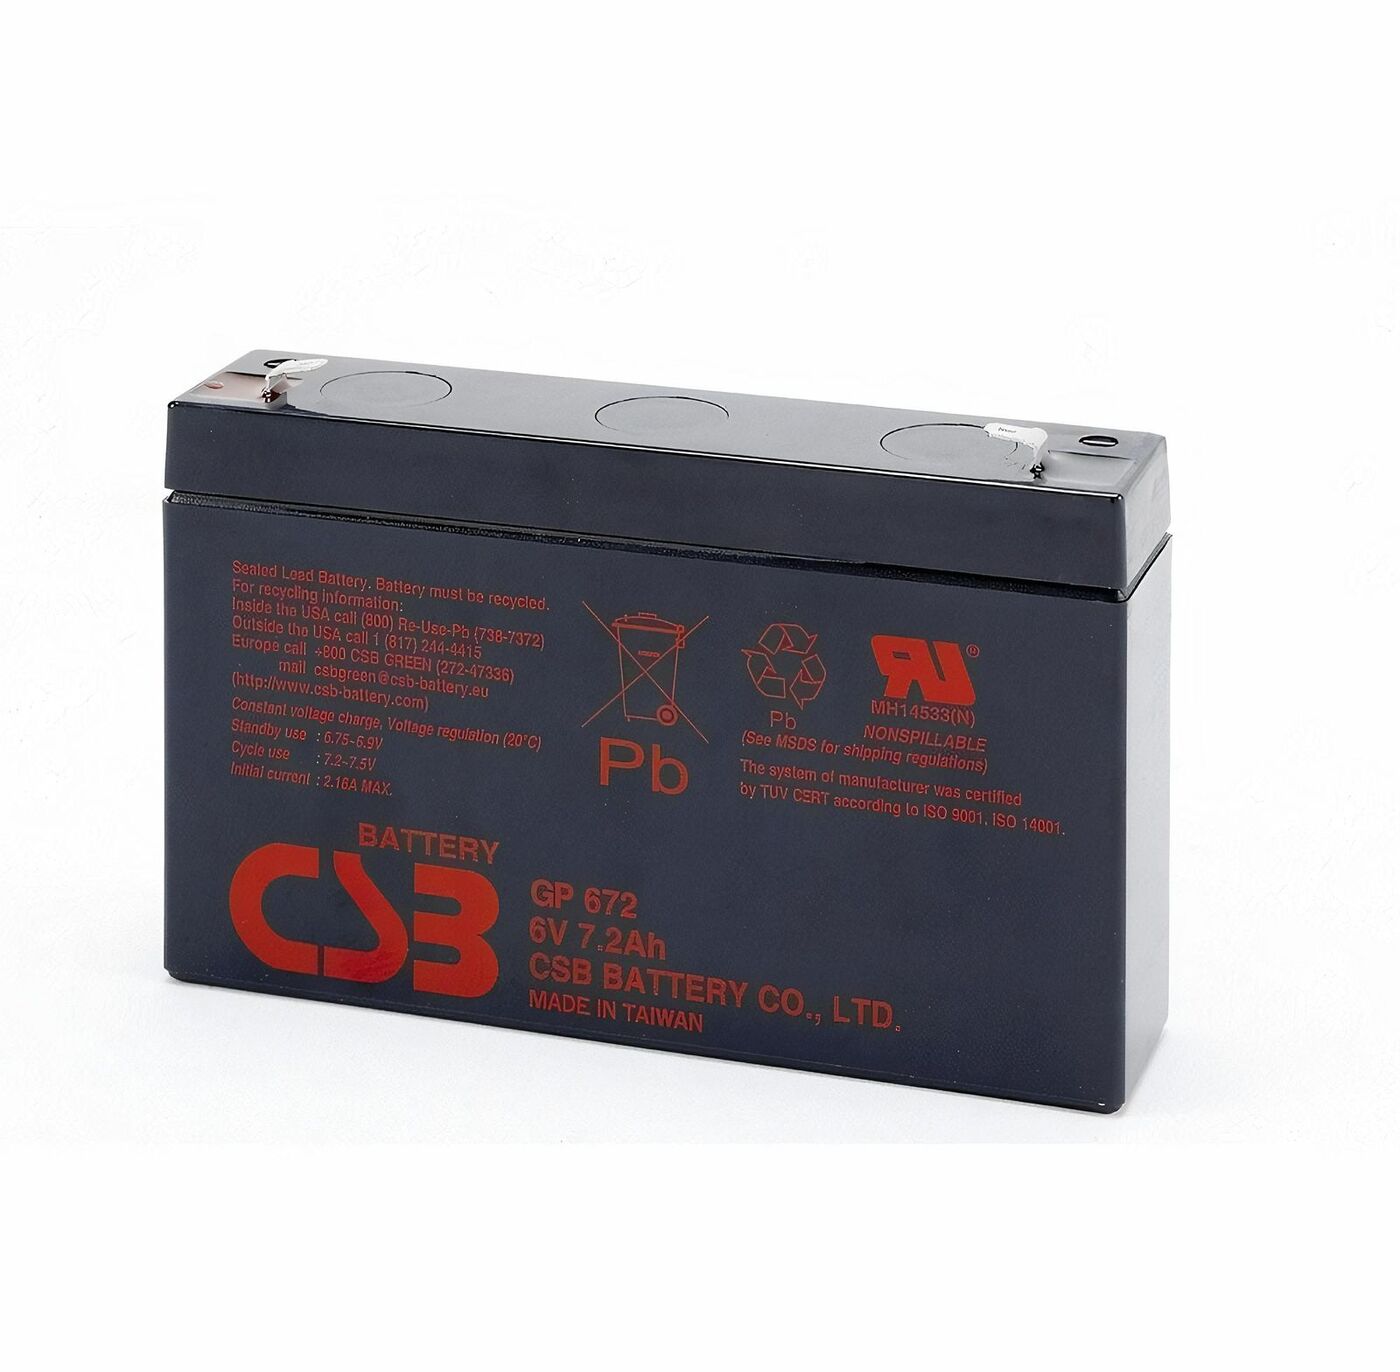 Свинцово-кислотный аккумулятор CSB GP672 6В 7.2Aч 247 аккумулятор свинцово кислотный gopower la 645 security 6v 4 5ah